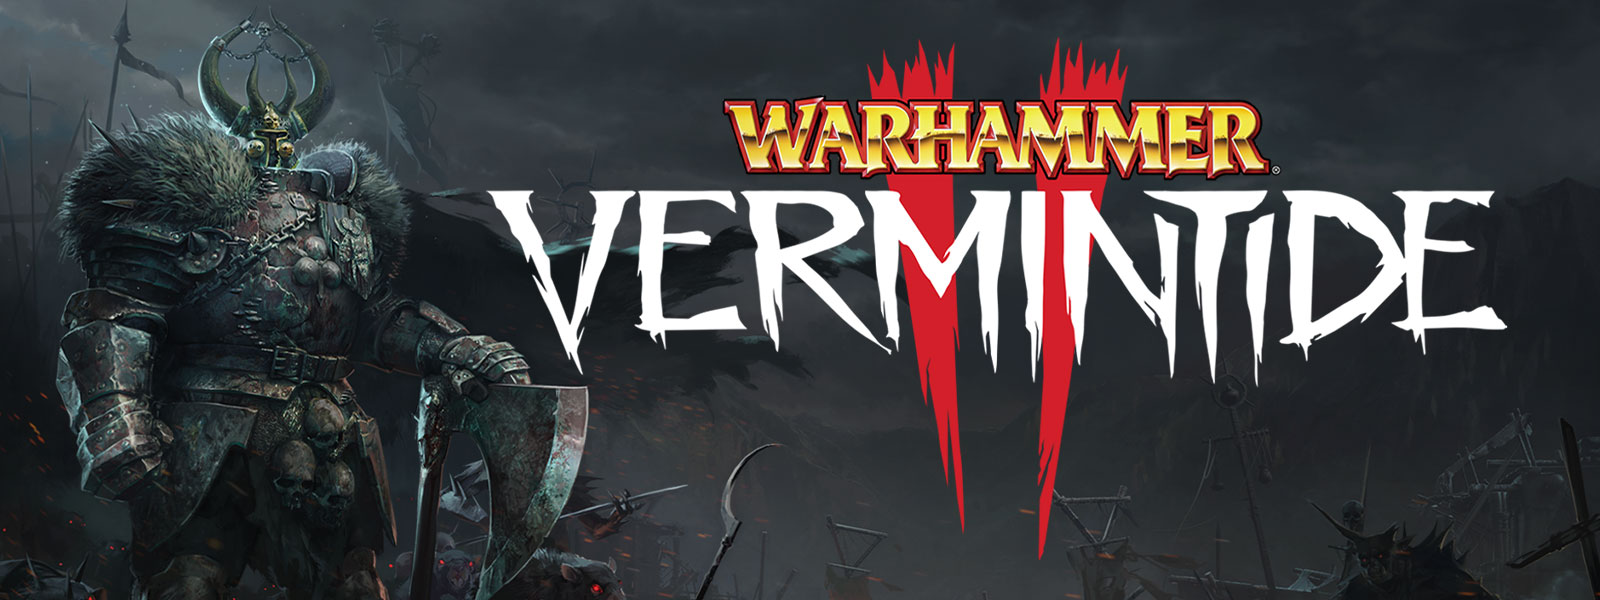 Warhammer: Vermintide 2: En pansret figur med pelspauldroner står i fortroppen til en hær av rotter med glødende øyne.